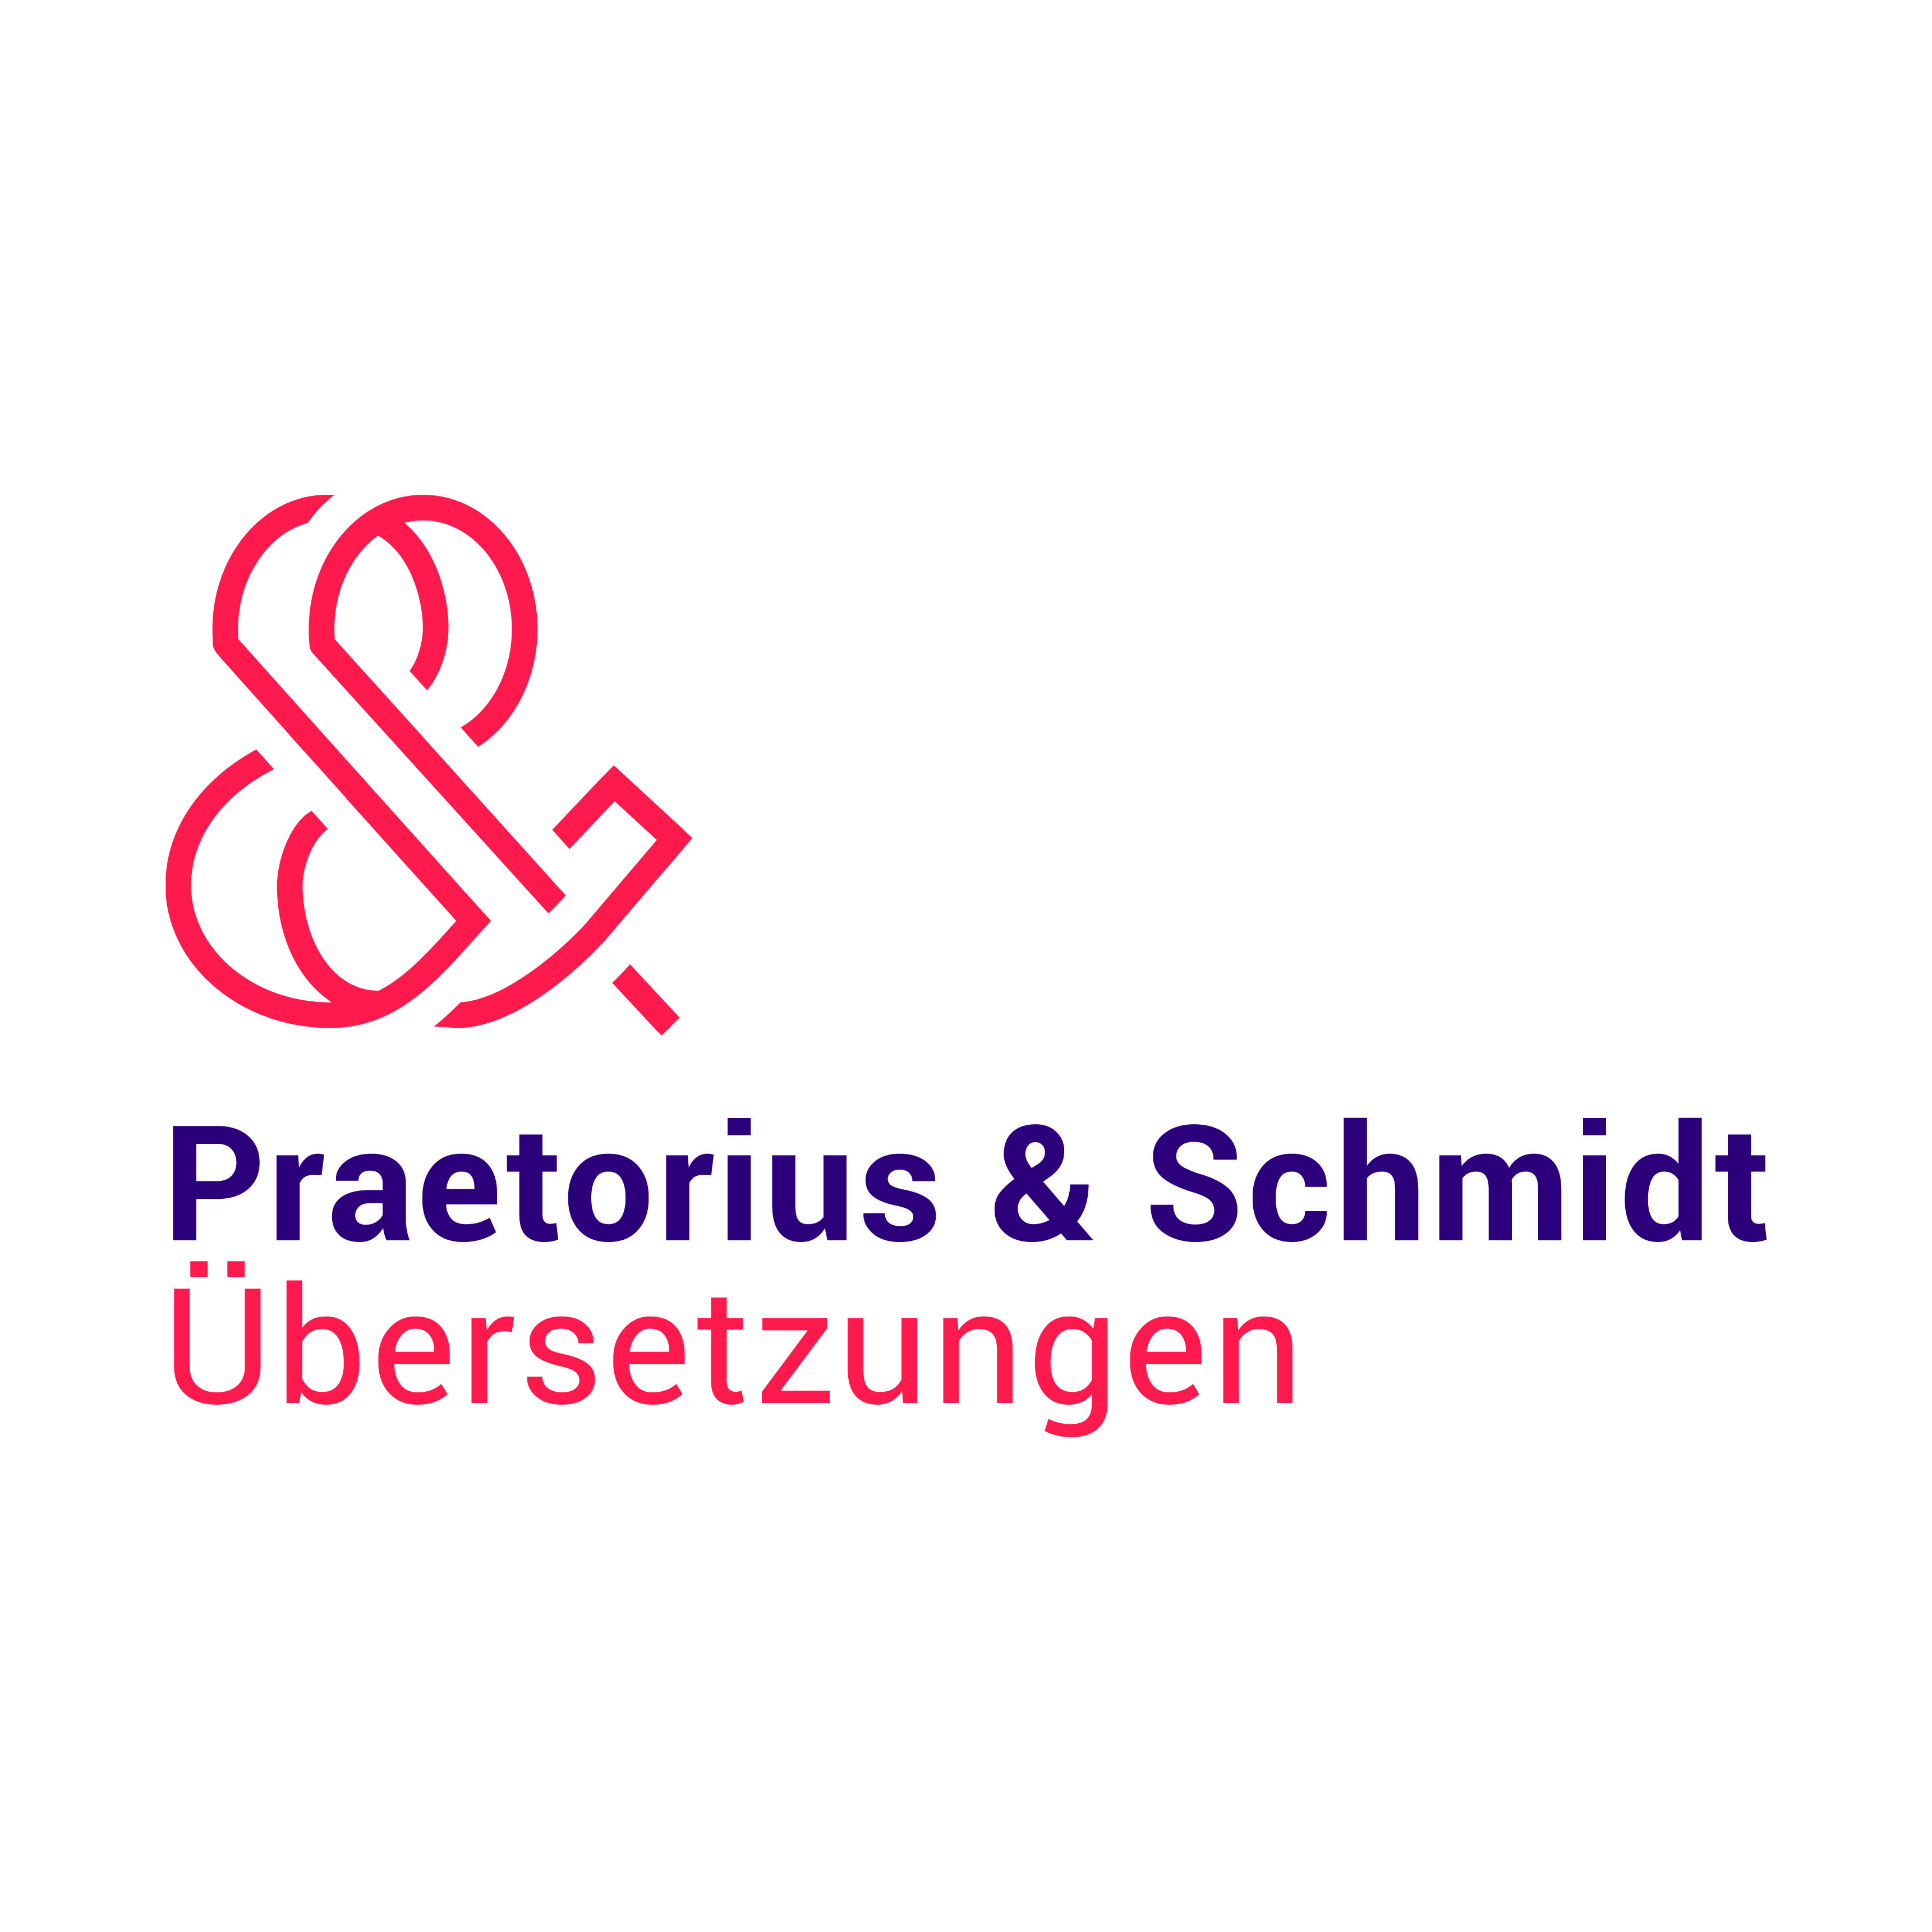 Praetorius & Schmidt Übersetzungen